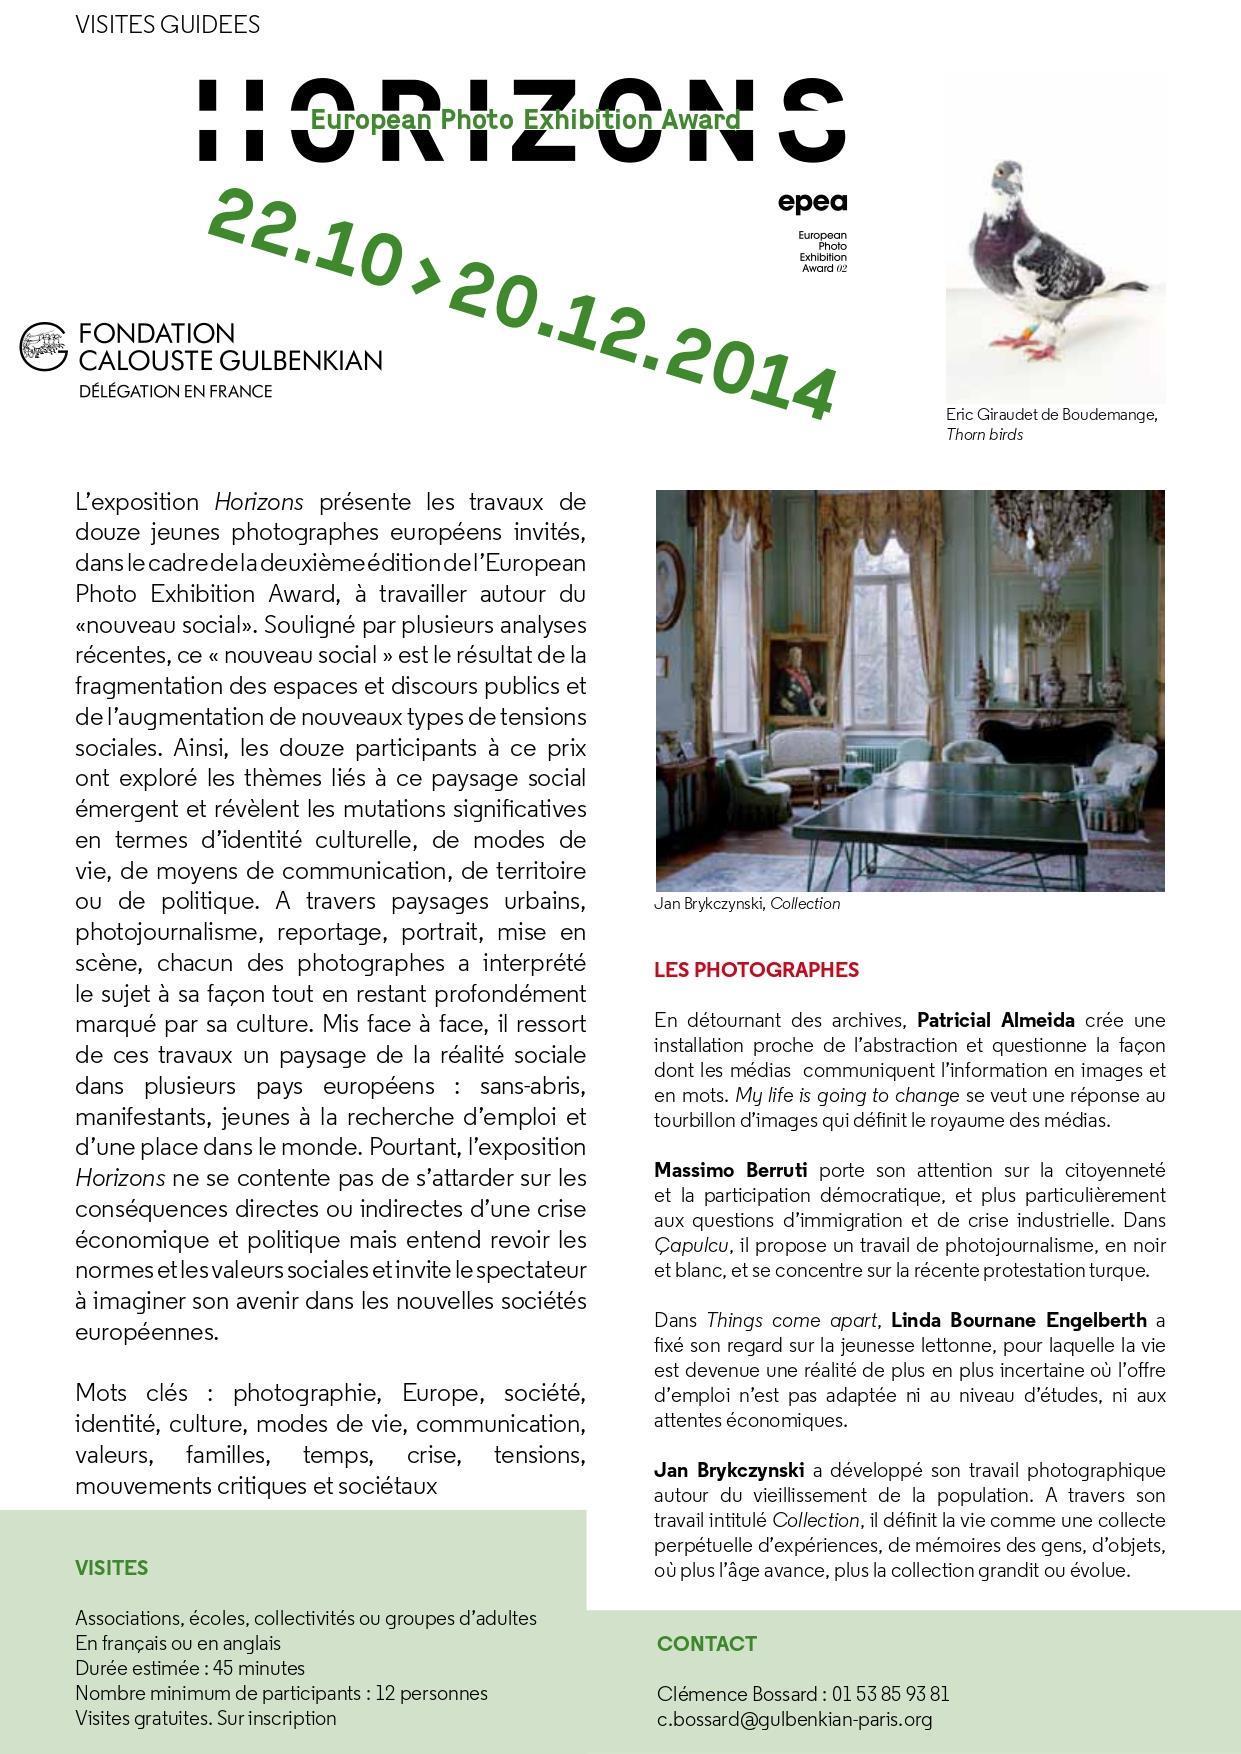 European Photo Exhibition Award 02. The New Social